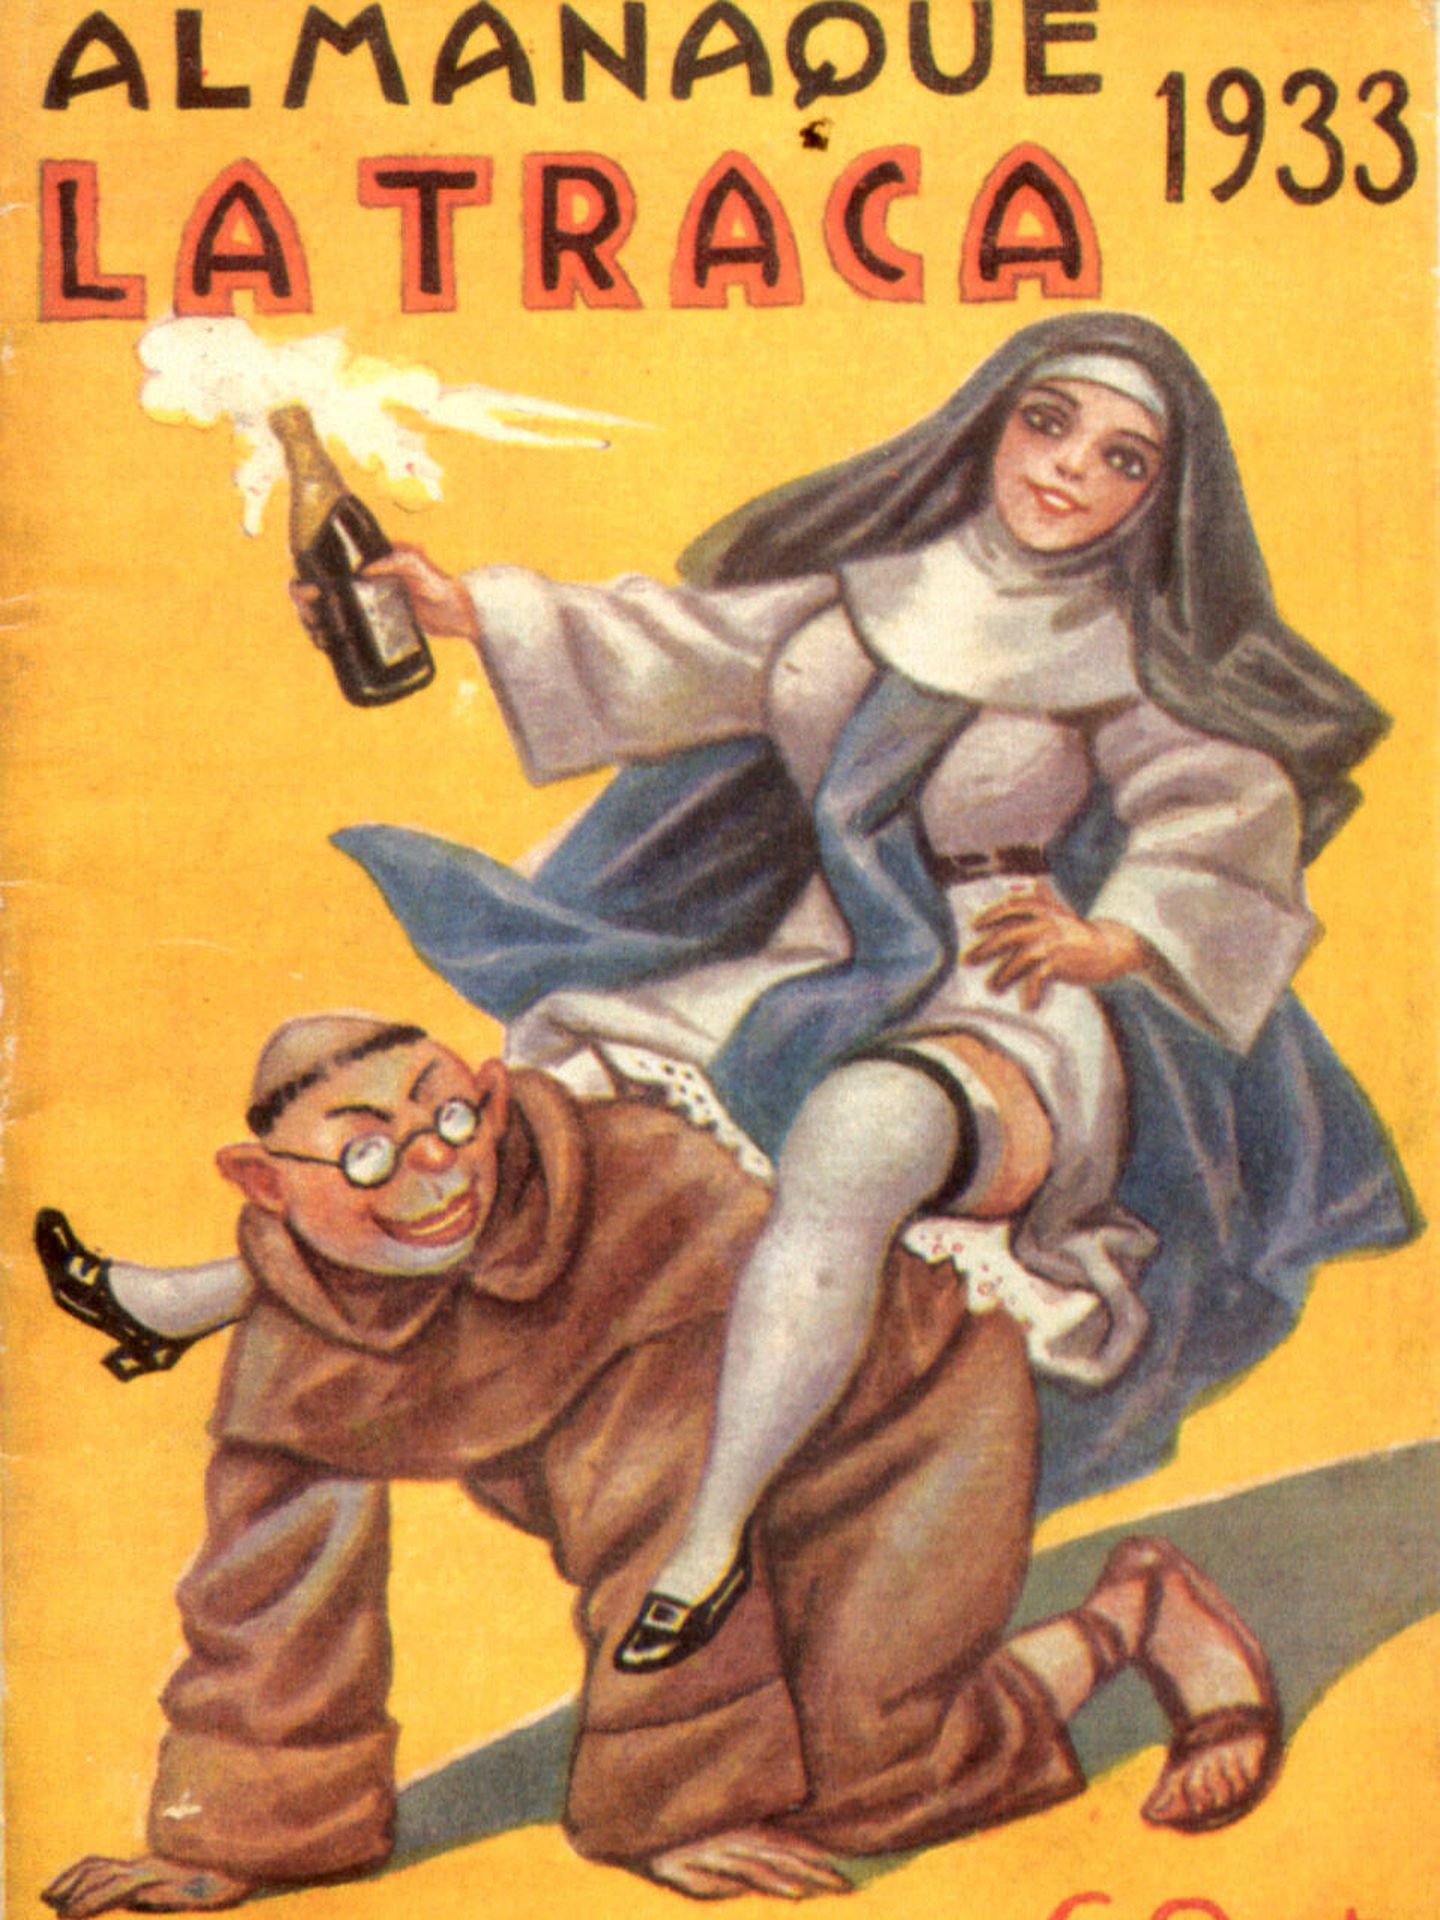 Portada de 'La Traca' (1933).